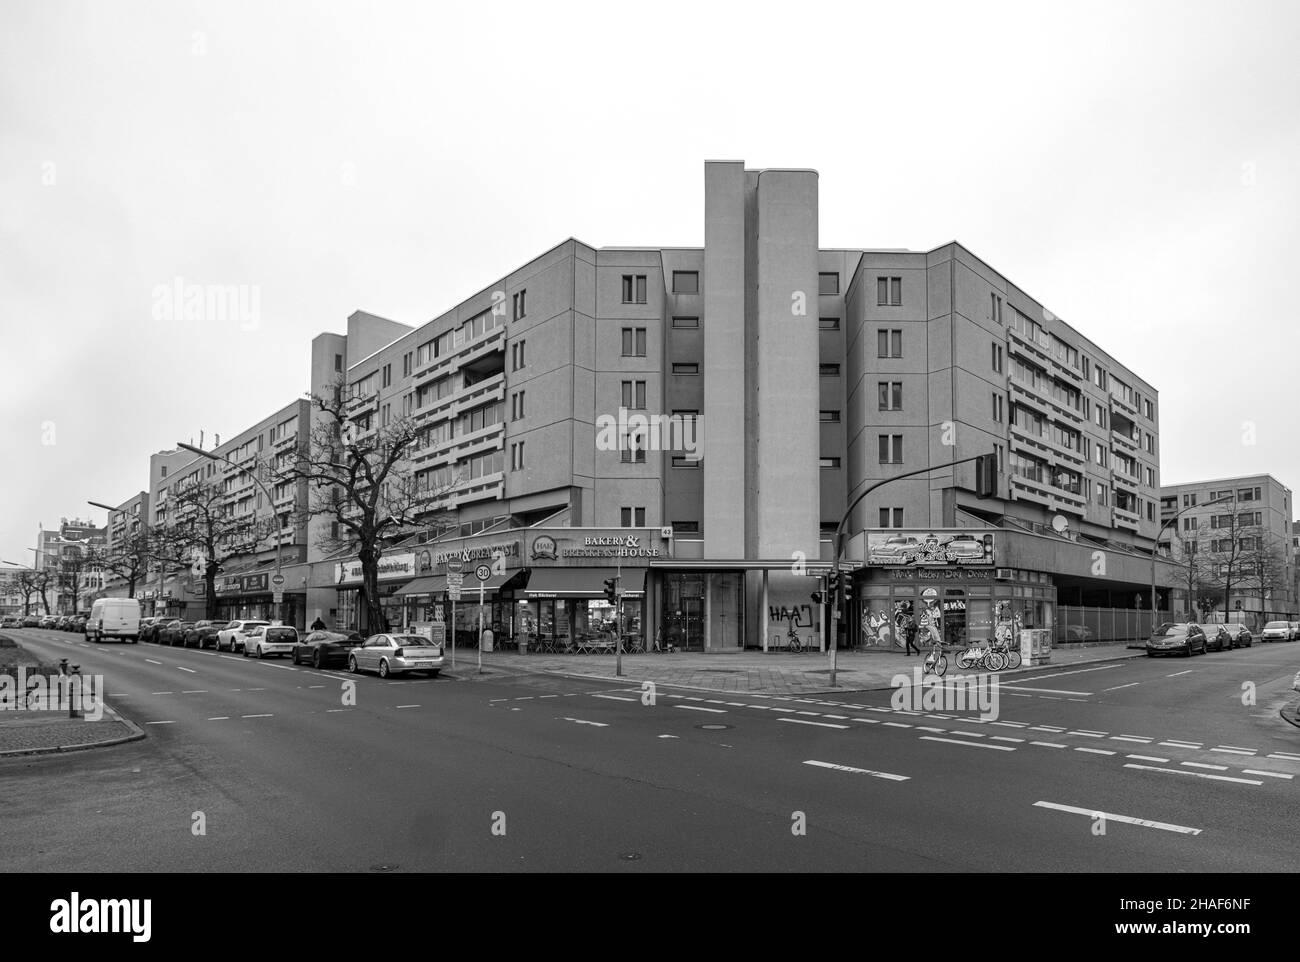 Schöneberger Terrassen, Berlin. Sozialer Wohnungsbau der 1970er Jahre Stockfoto